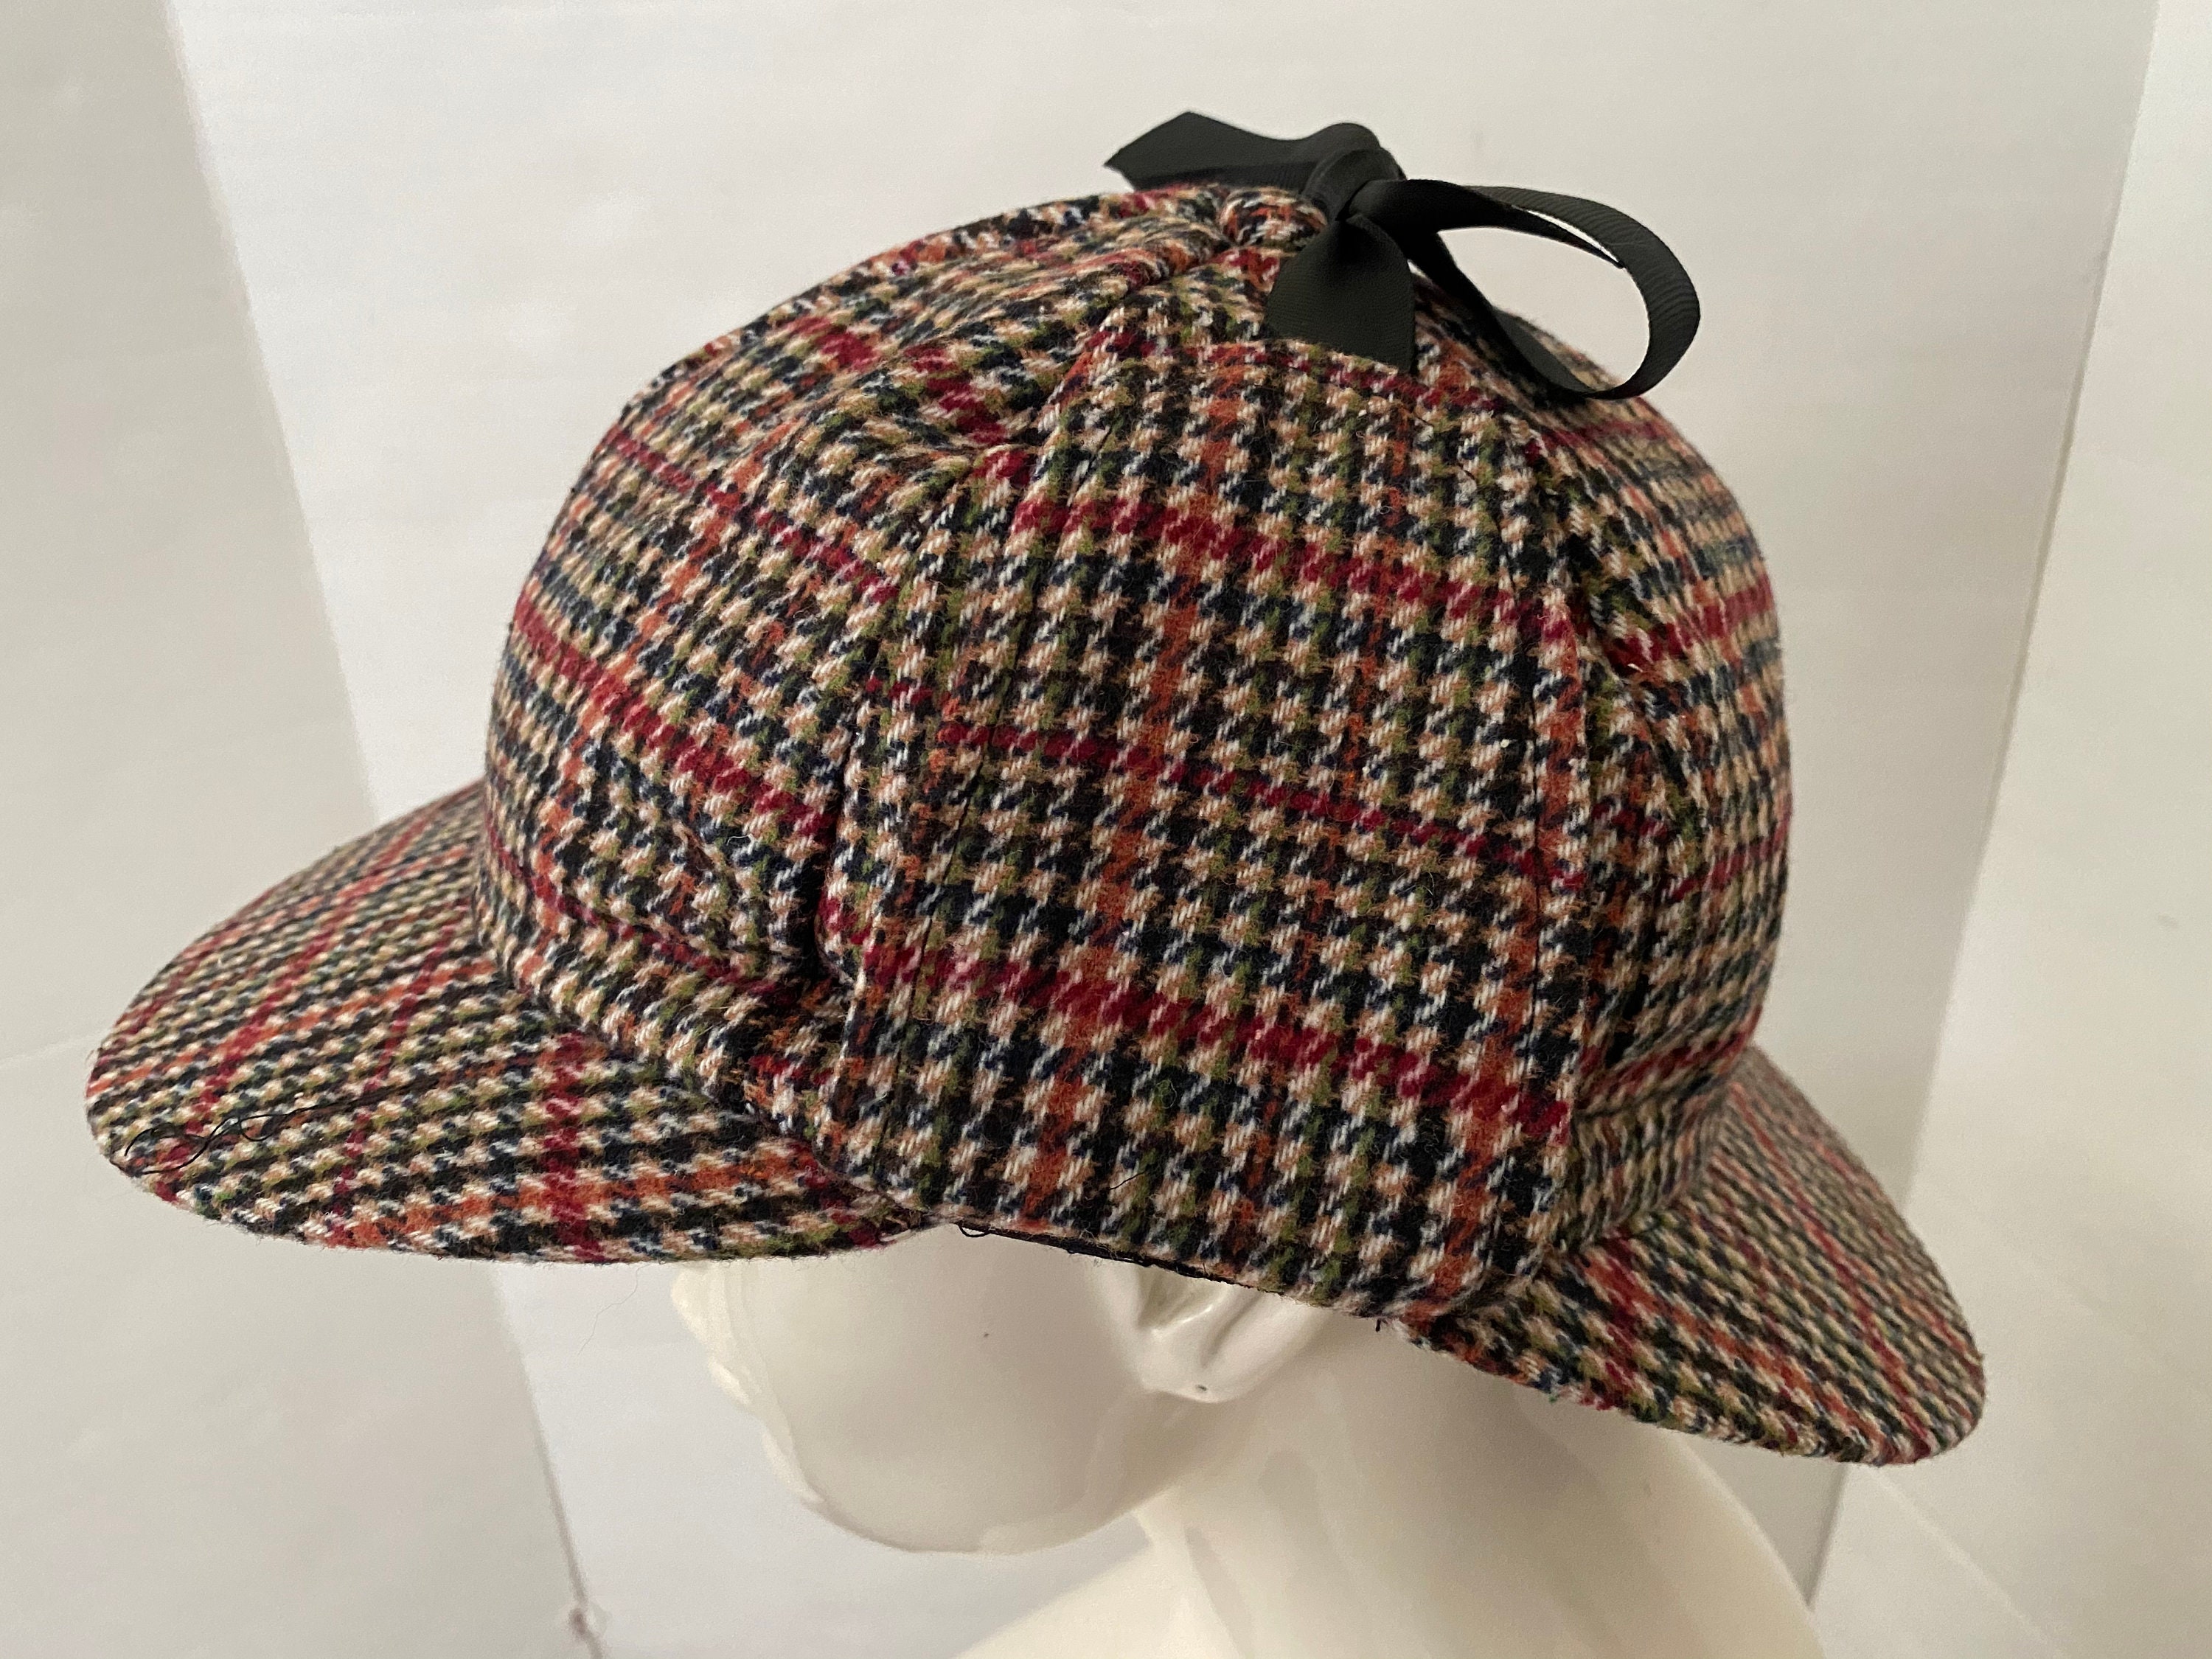 Sherlock Holmes Tweed Deerstalker hat with Two Peaks and Ear Flaps